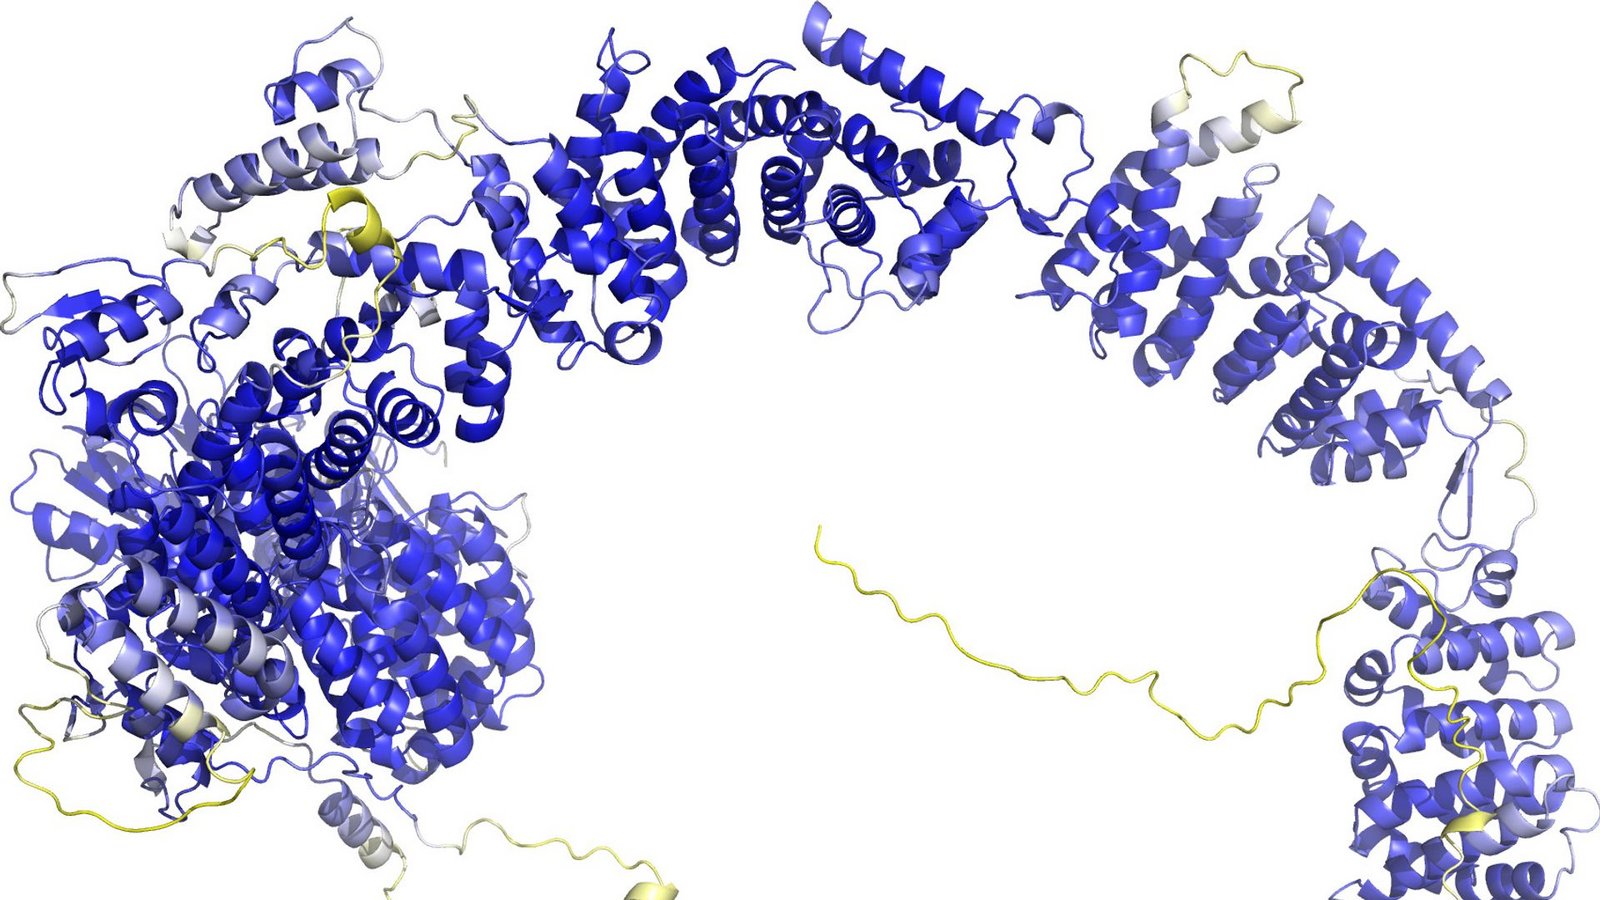 Das Modell der AlphaFold Protein Structure Database stellt das Rückgrat der Proteinstruktur dar. Sogenannte Sekundärstrukturelemente sind als Bänder wiedergegeben. In den blauen Bereichen ist das Model vermutlich zuverlässig. Die gelben Bereiche sind wahrscheinlich flexibel, und nur eine mögliche Struktur ist dargestellt.Foto: -/AlphaFold Protein Structure Database/dpa